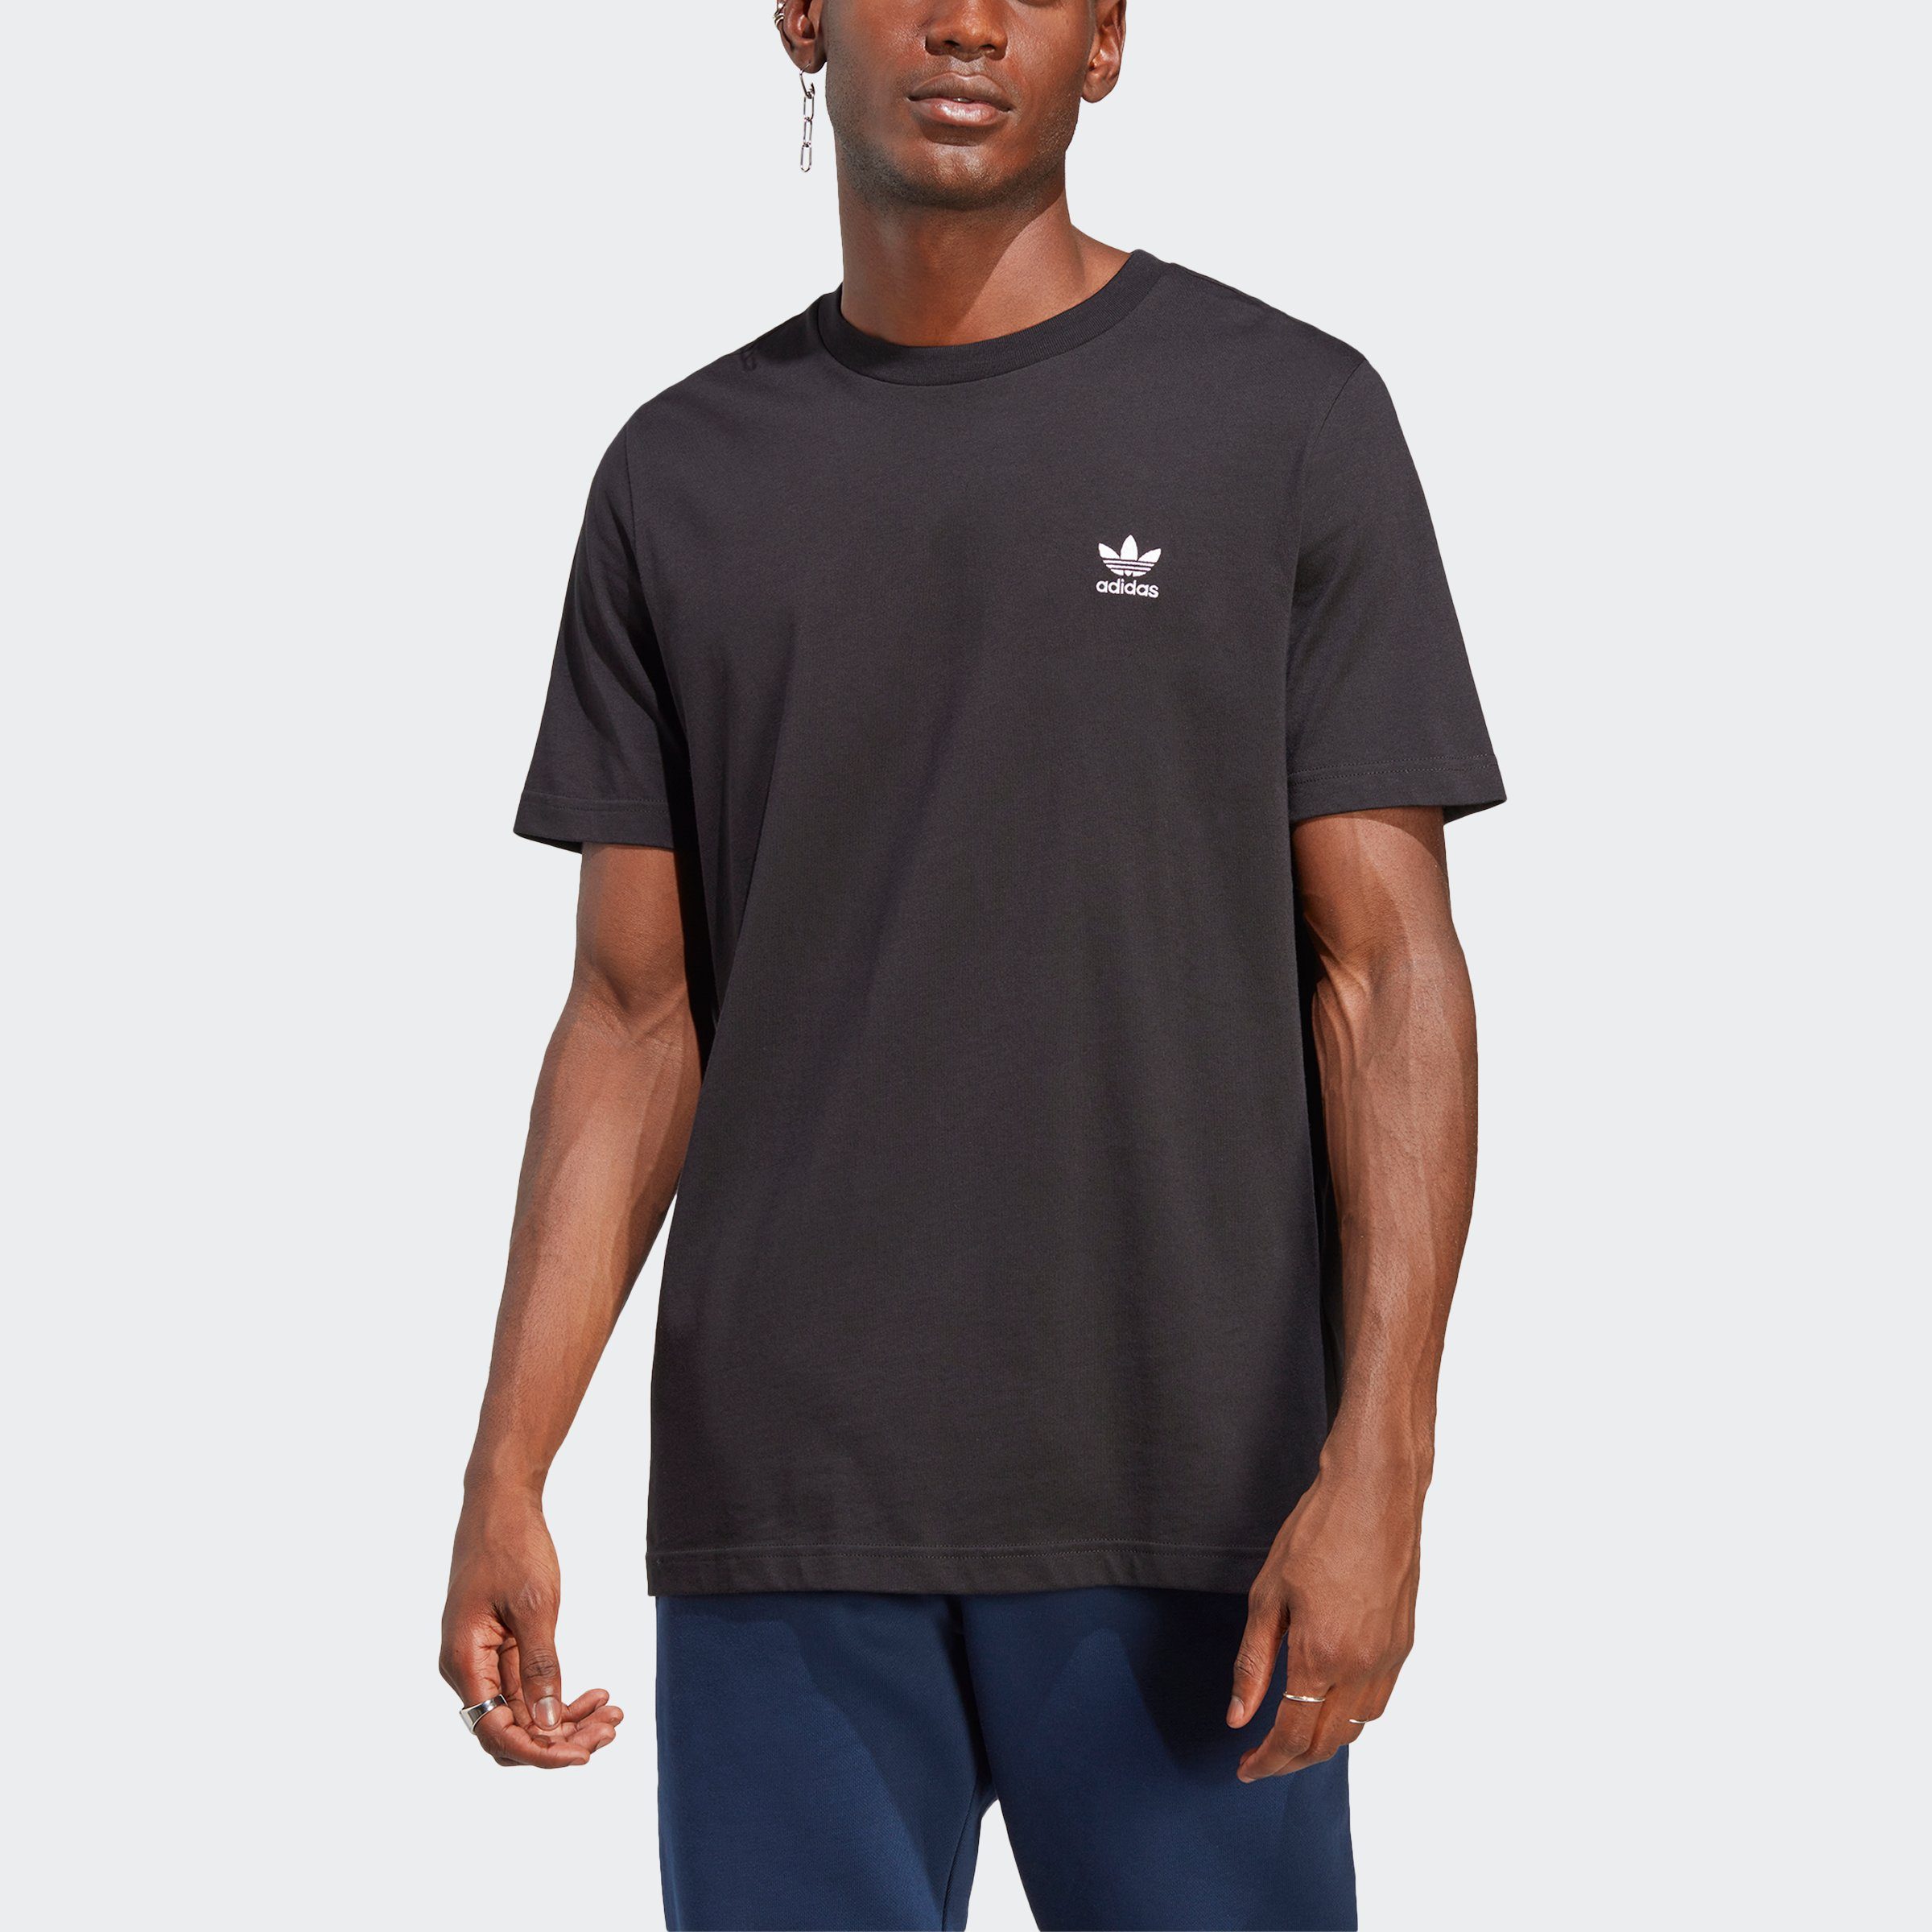 adidas Originals T-Shirt TREFOIL ESSENTIALS, Ein unverzichtbares T-Shirt  für jeden